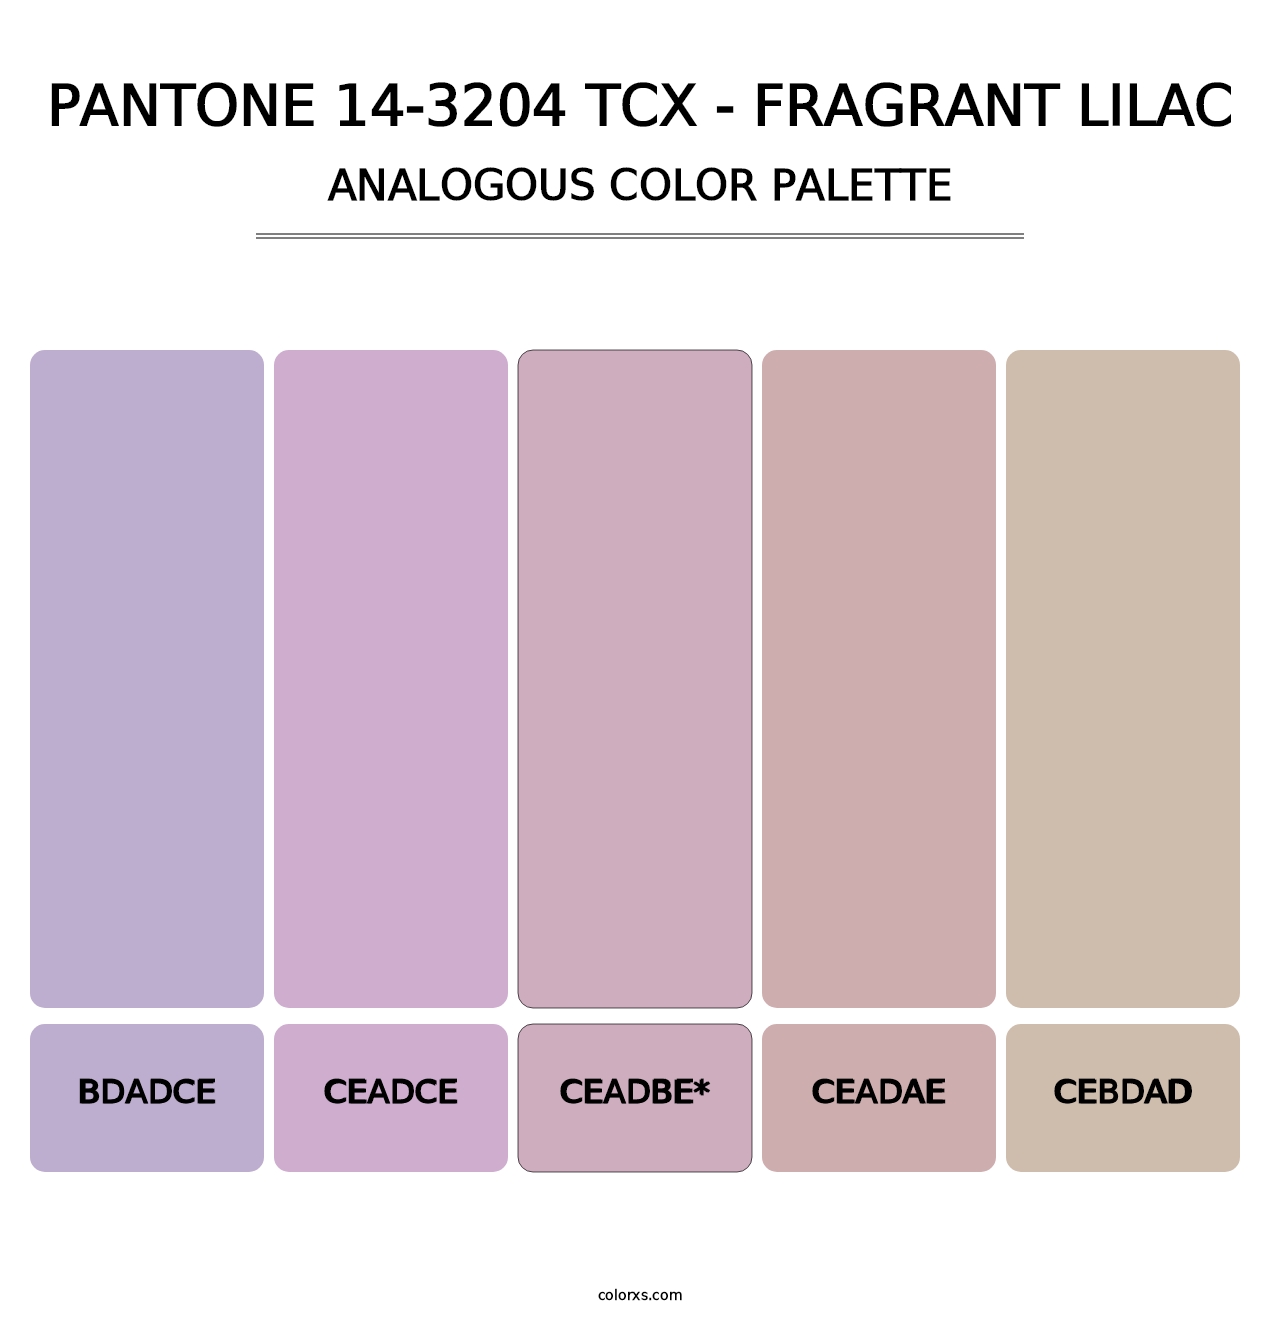 PANTONE 14-3204 TCX - Fragrant Lilac - Analogous Color Palette